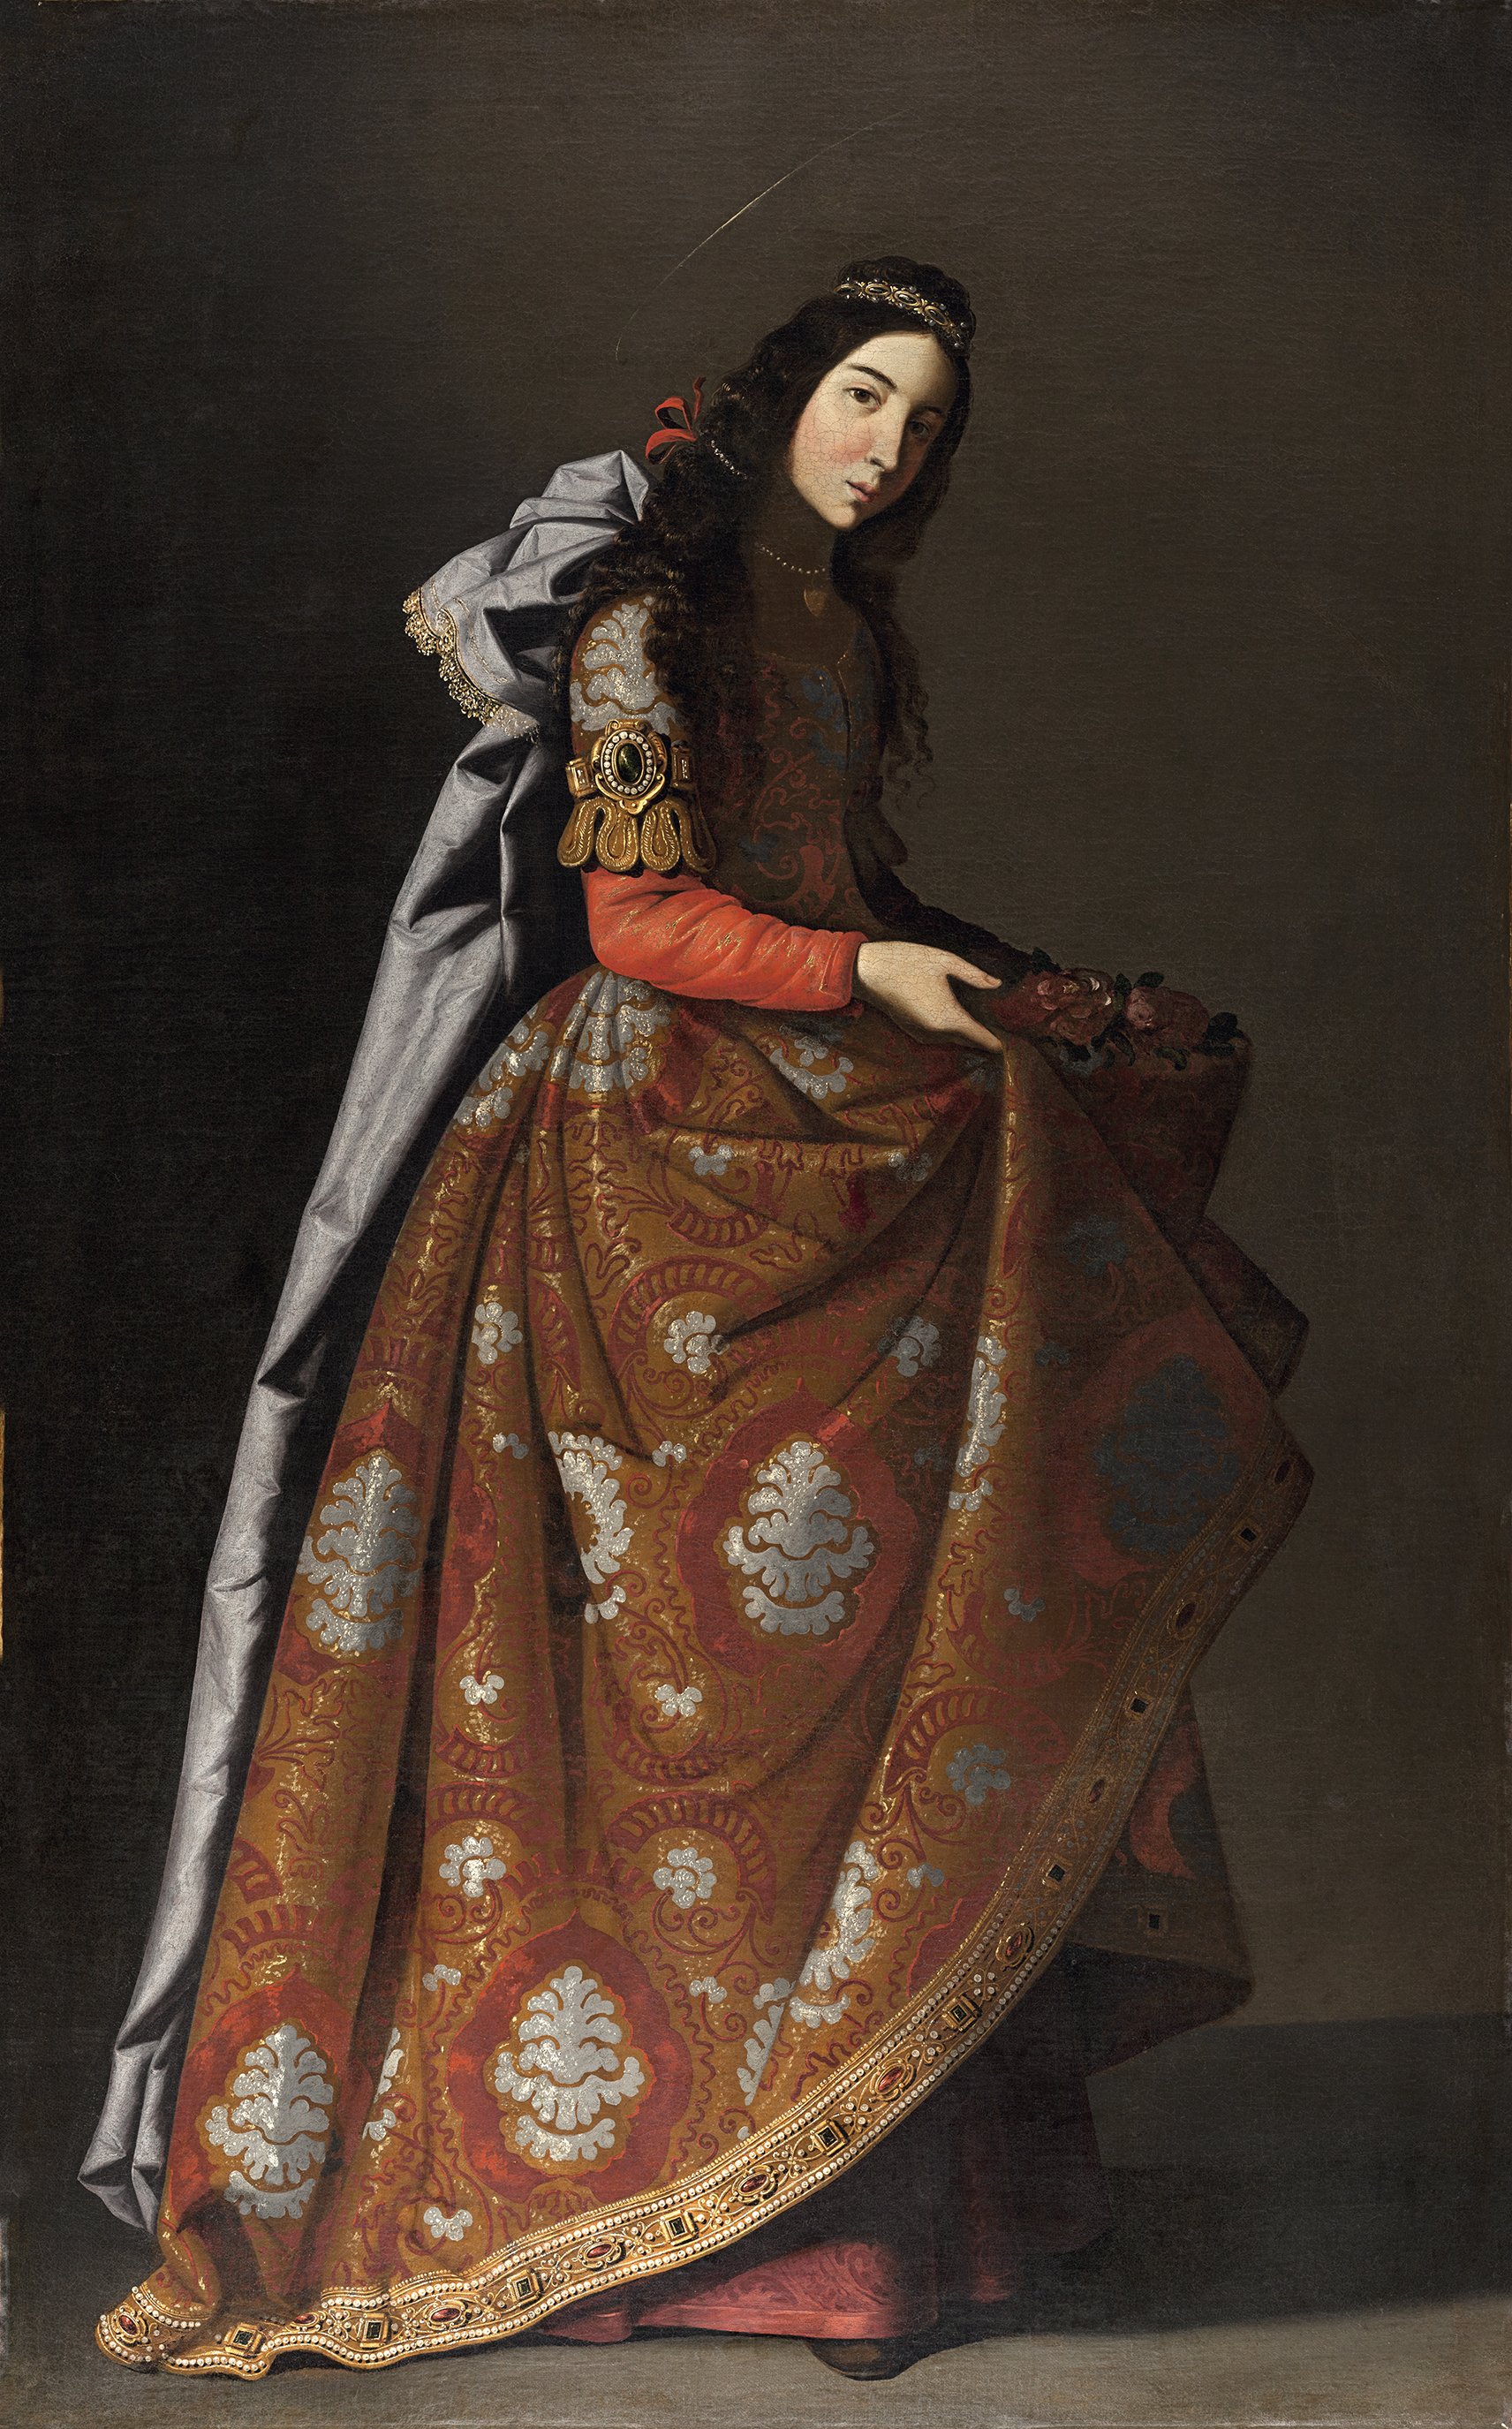 圣卡西尔达 Saint Casilda by 弗朗西斯柯 苏巴朗 - c. 1630-1635 - 171 x 107 cm 